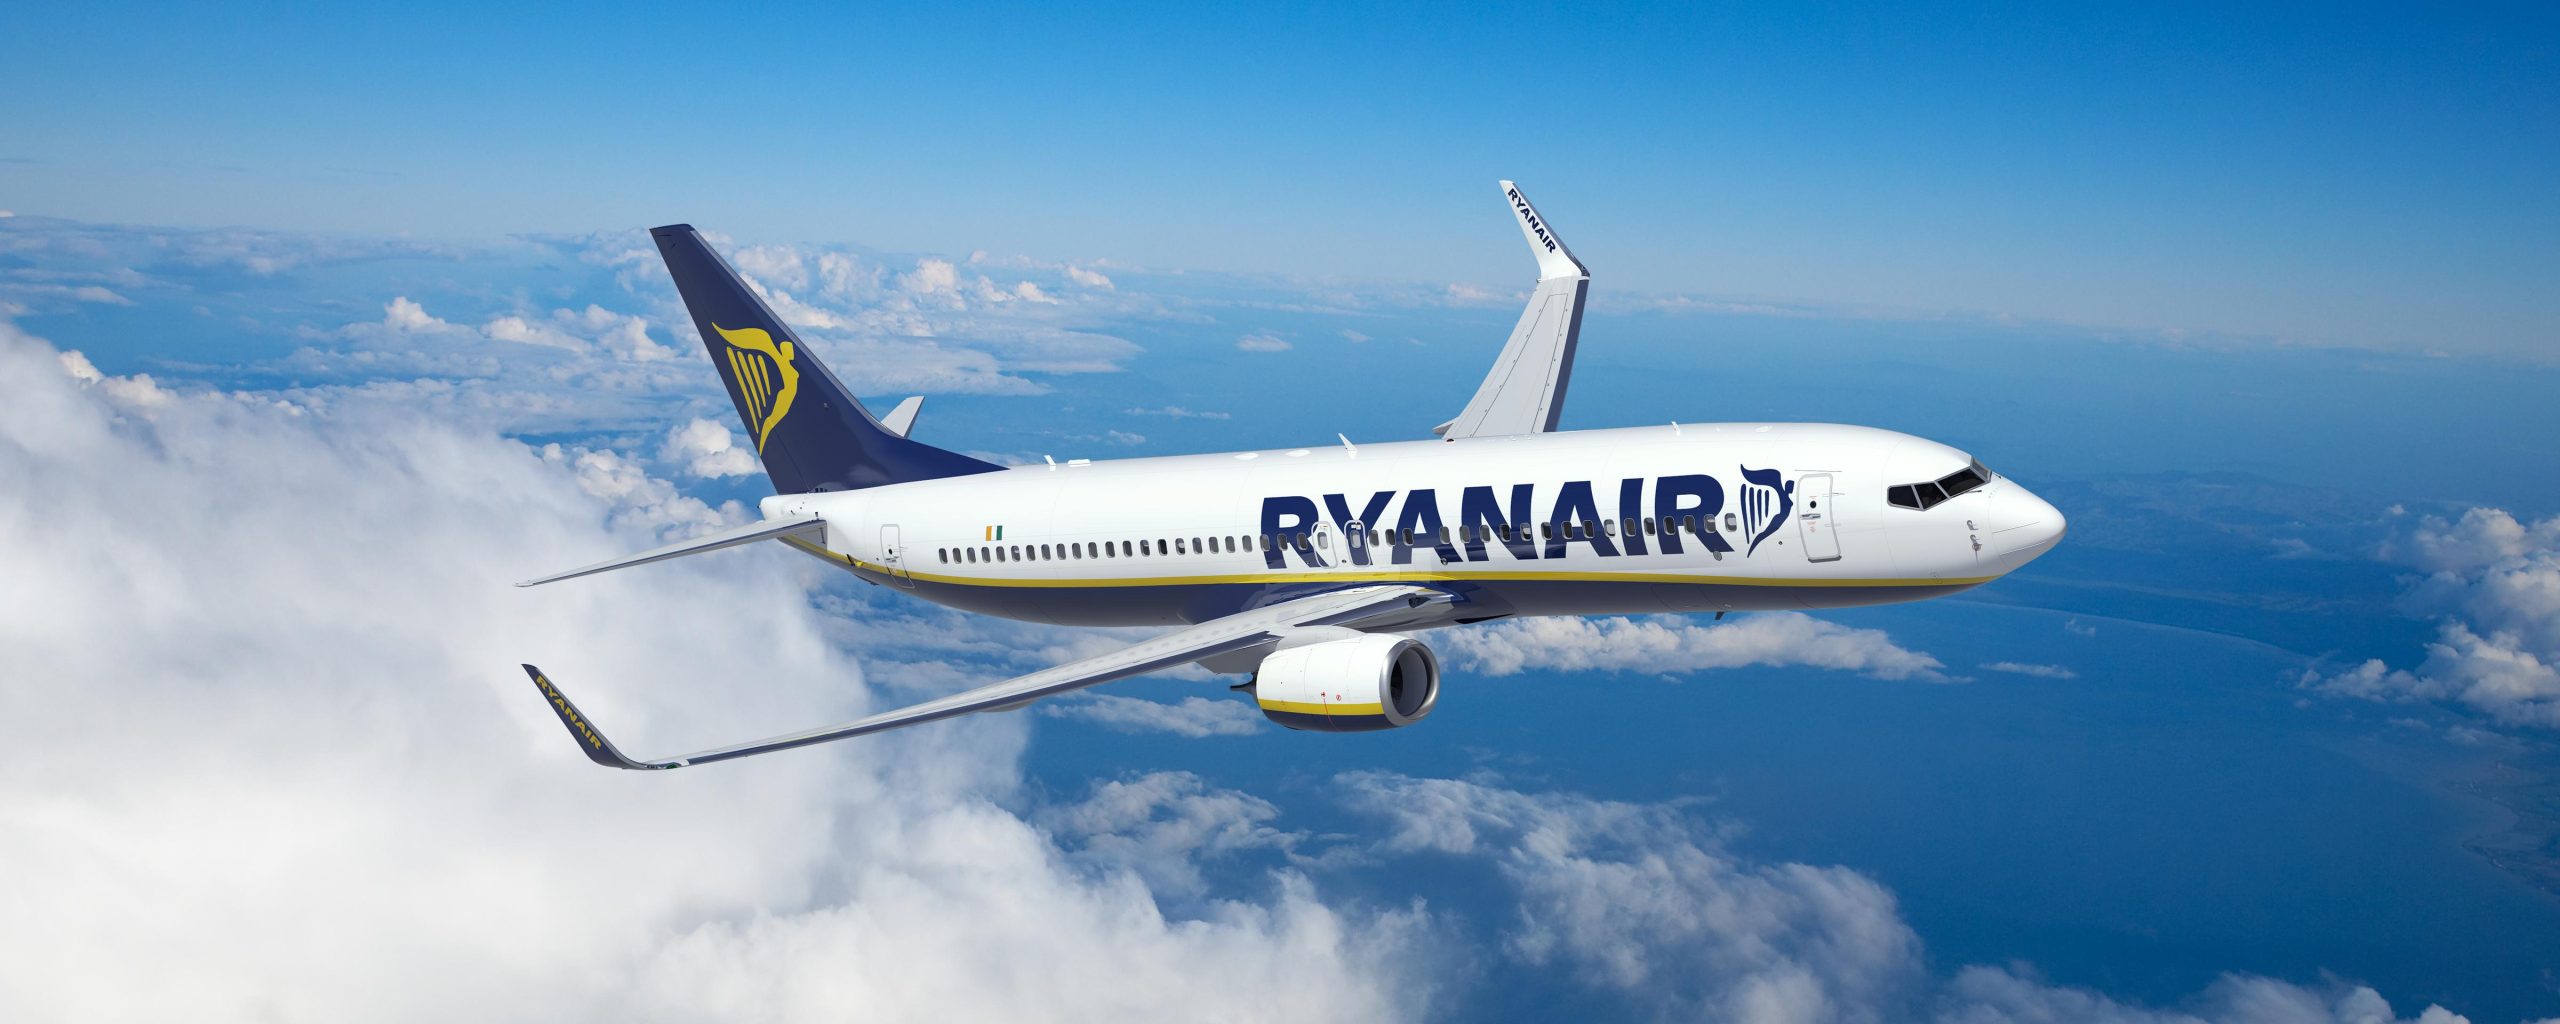 Έκπτωση 20% σε 500.000 εισιτήρια ανακοίνωσε η Ryanair